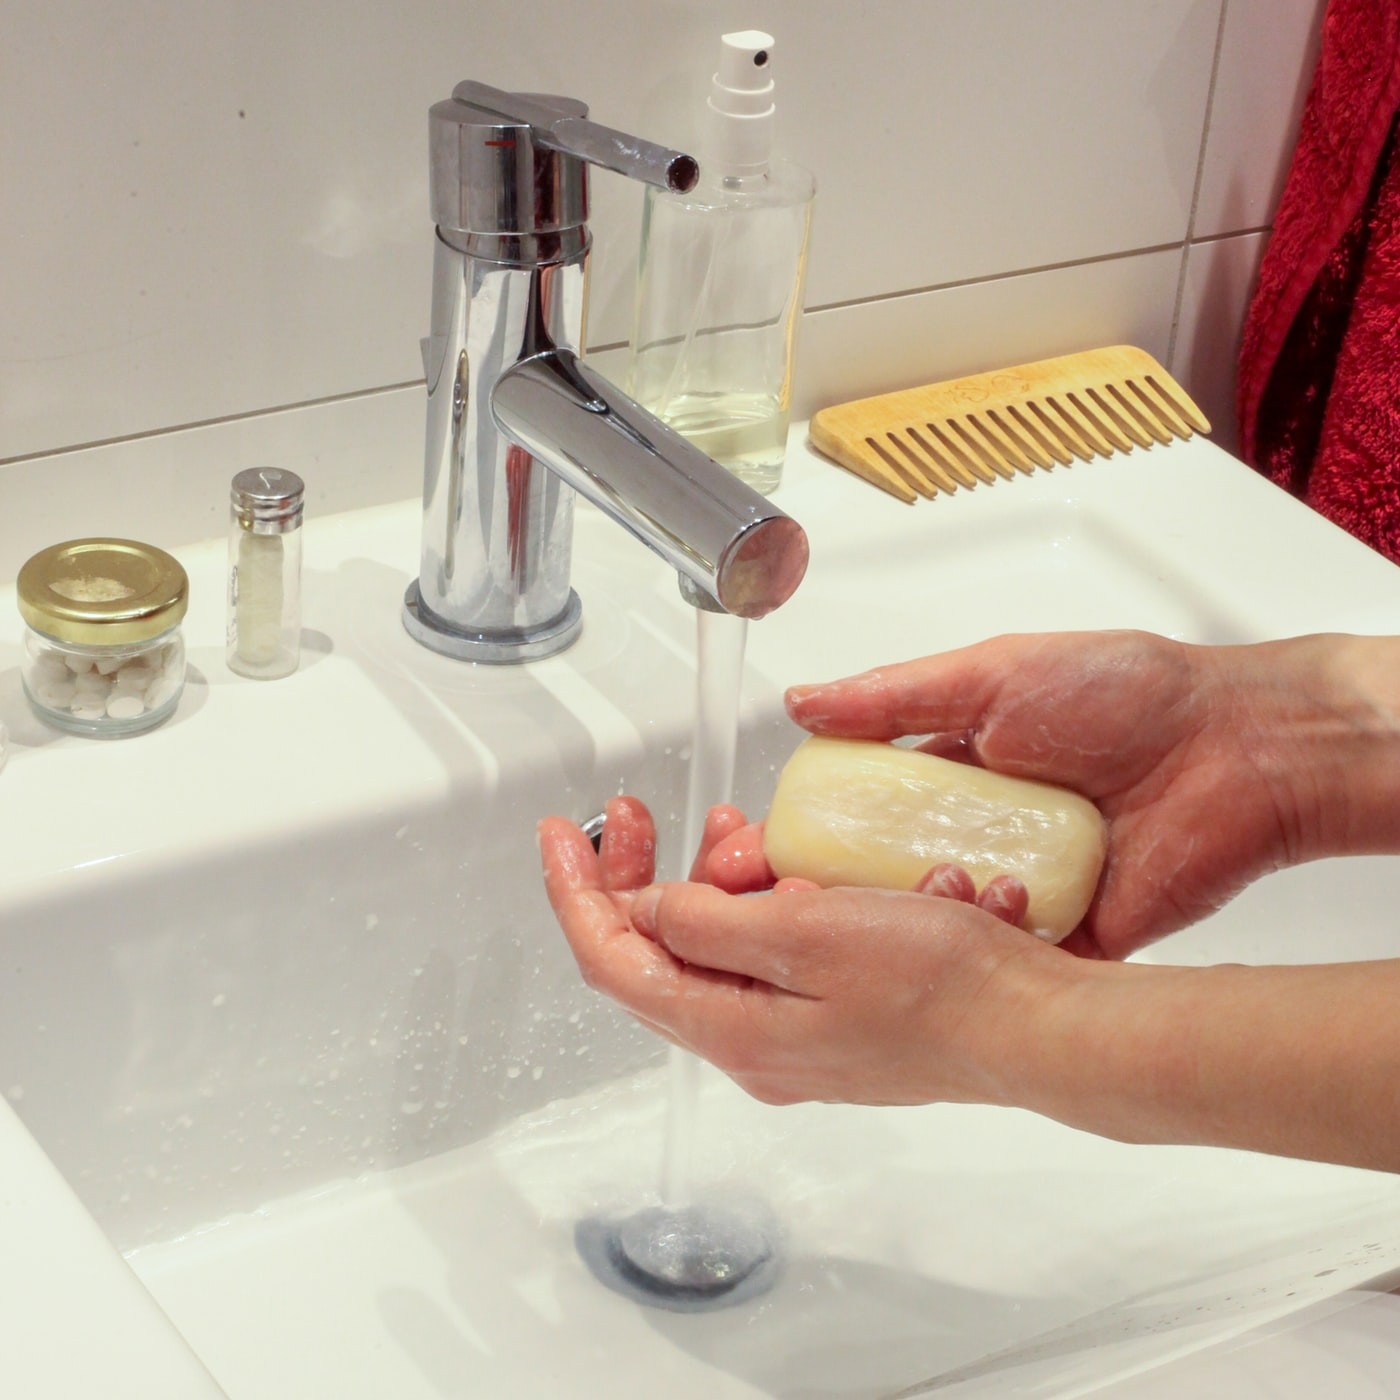 Preste atenção ao modo como lava as mãos (Foto:  Reprodução/Unsplash)